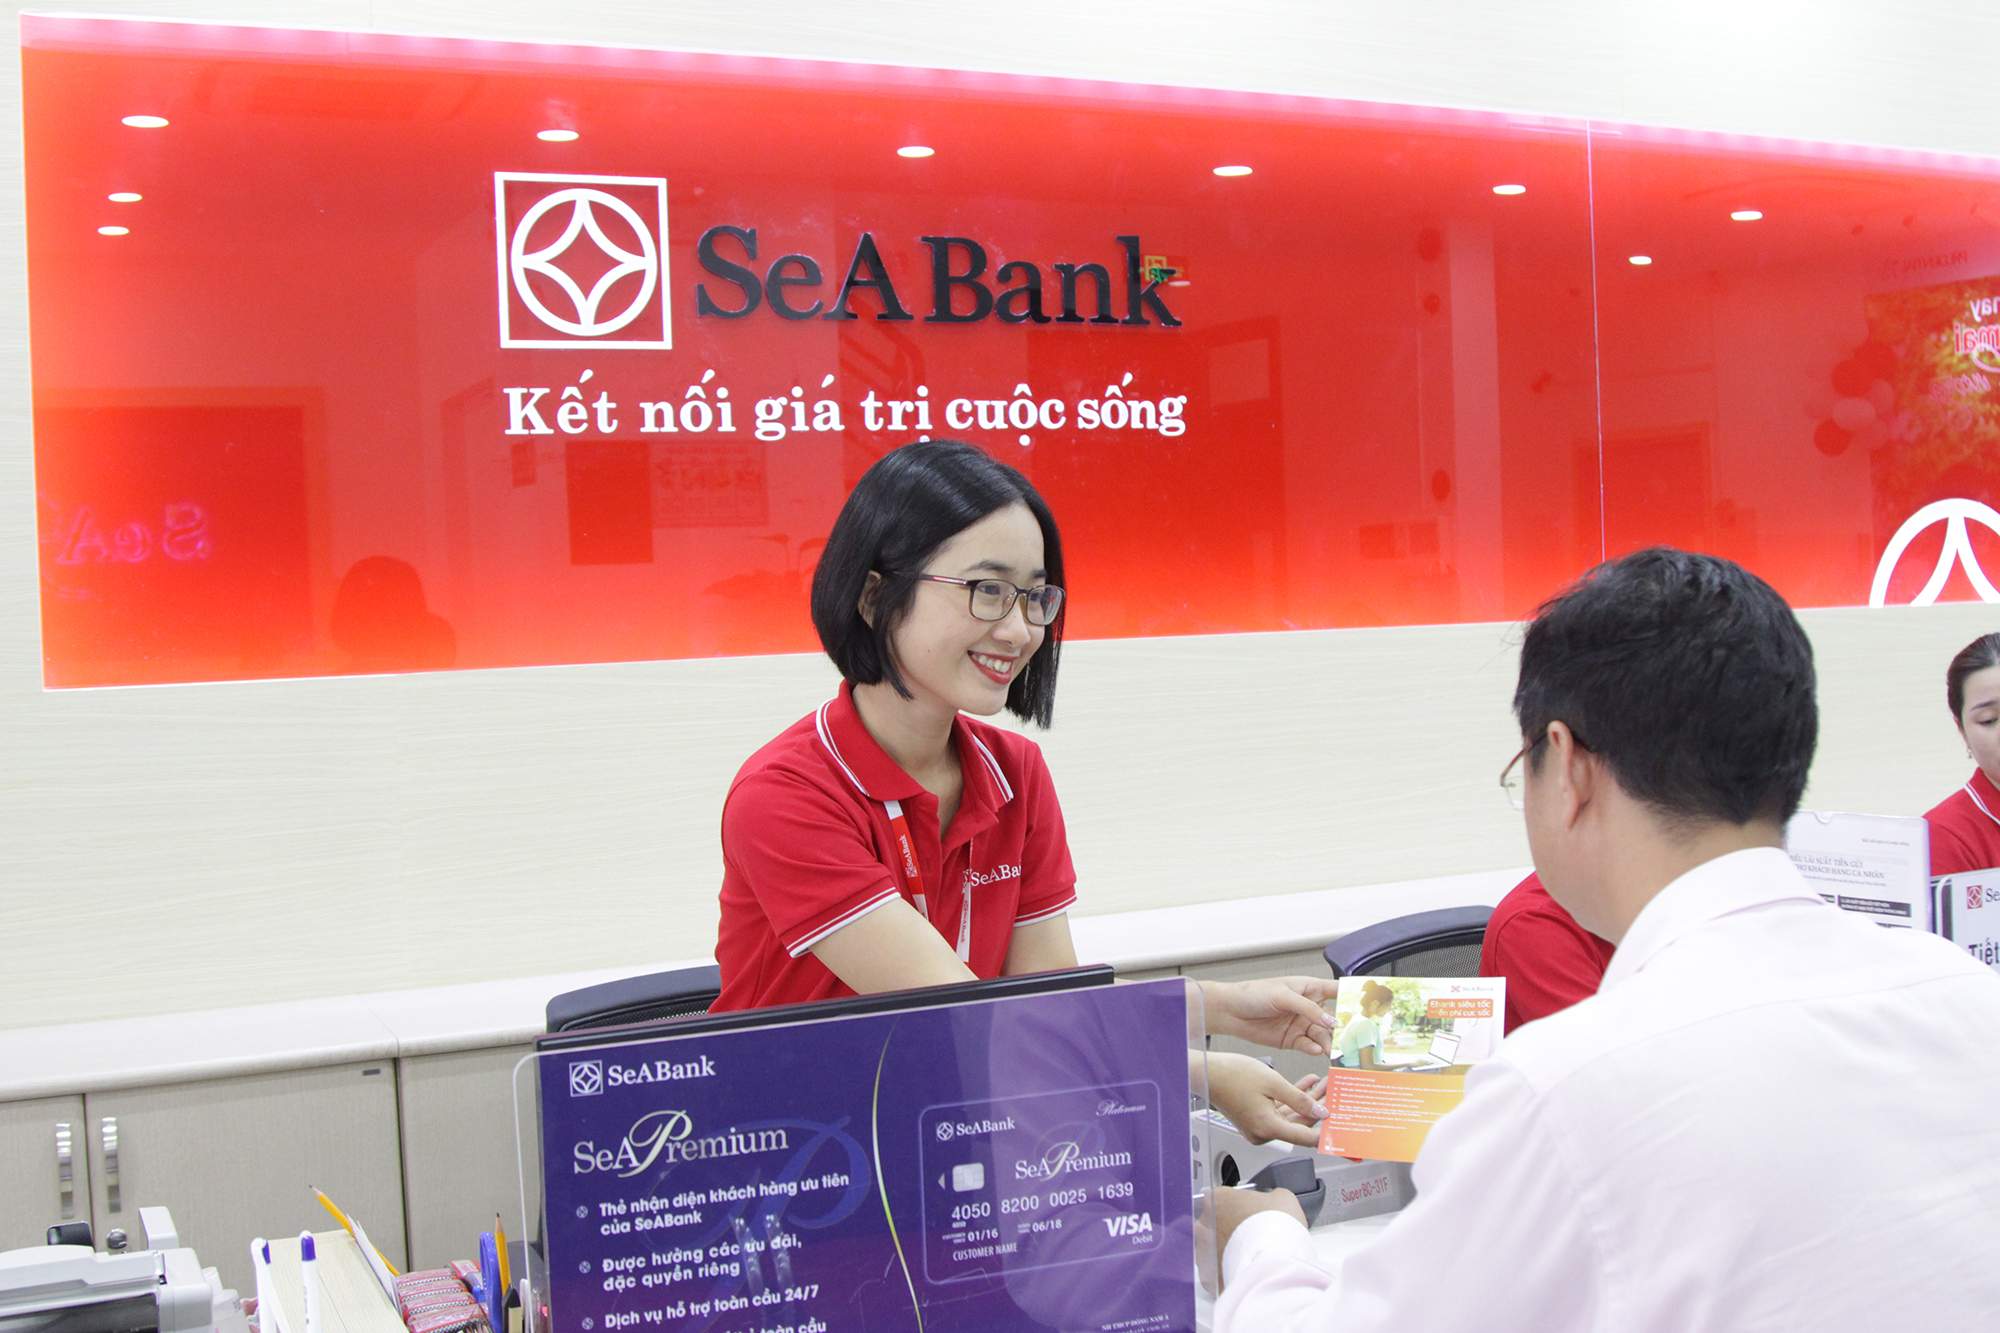 Phí chuyển tiền ngân hàng Seabank hiện nay là bao nhiêu?